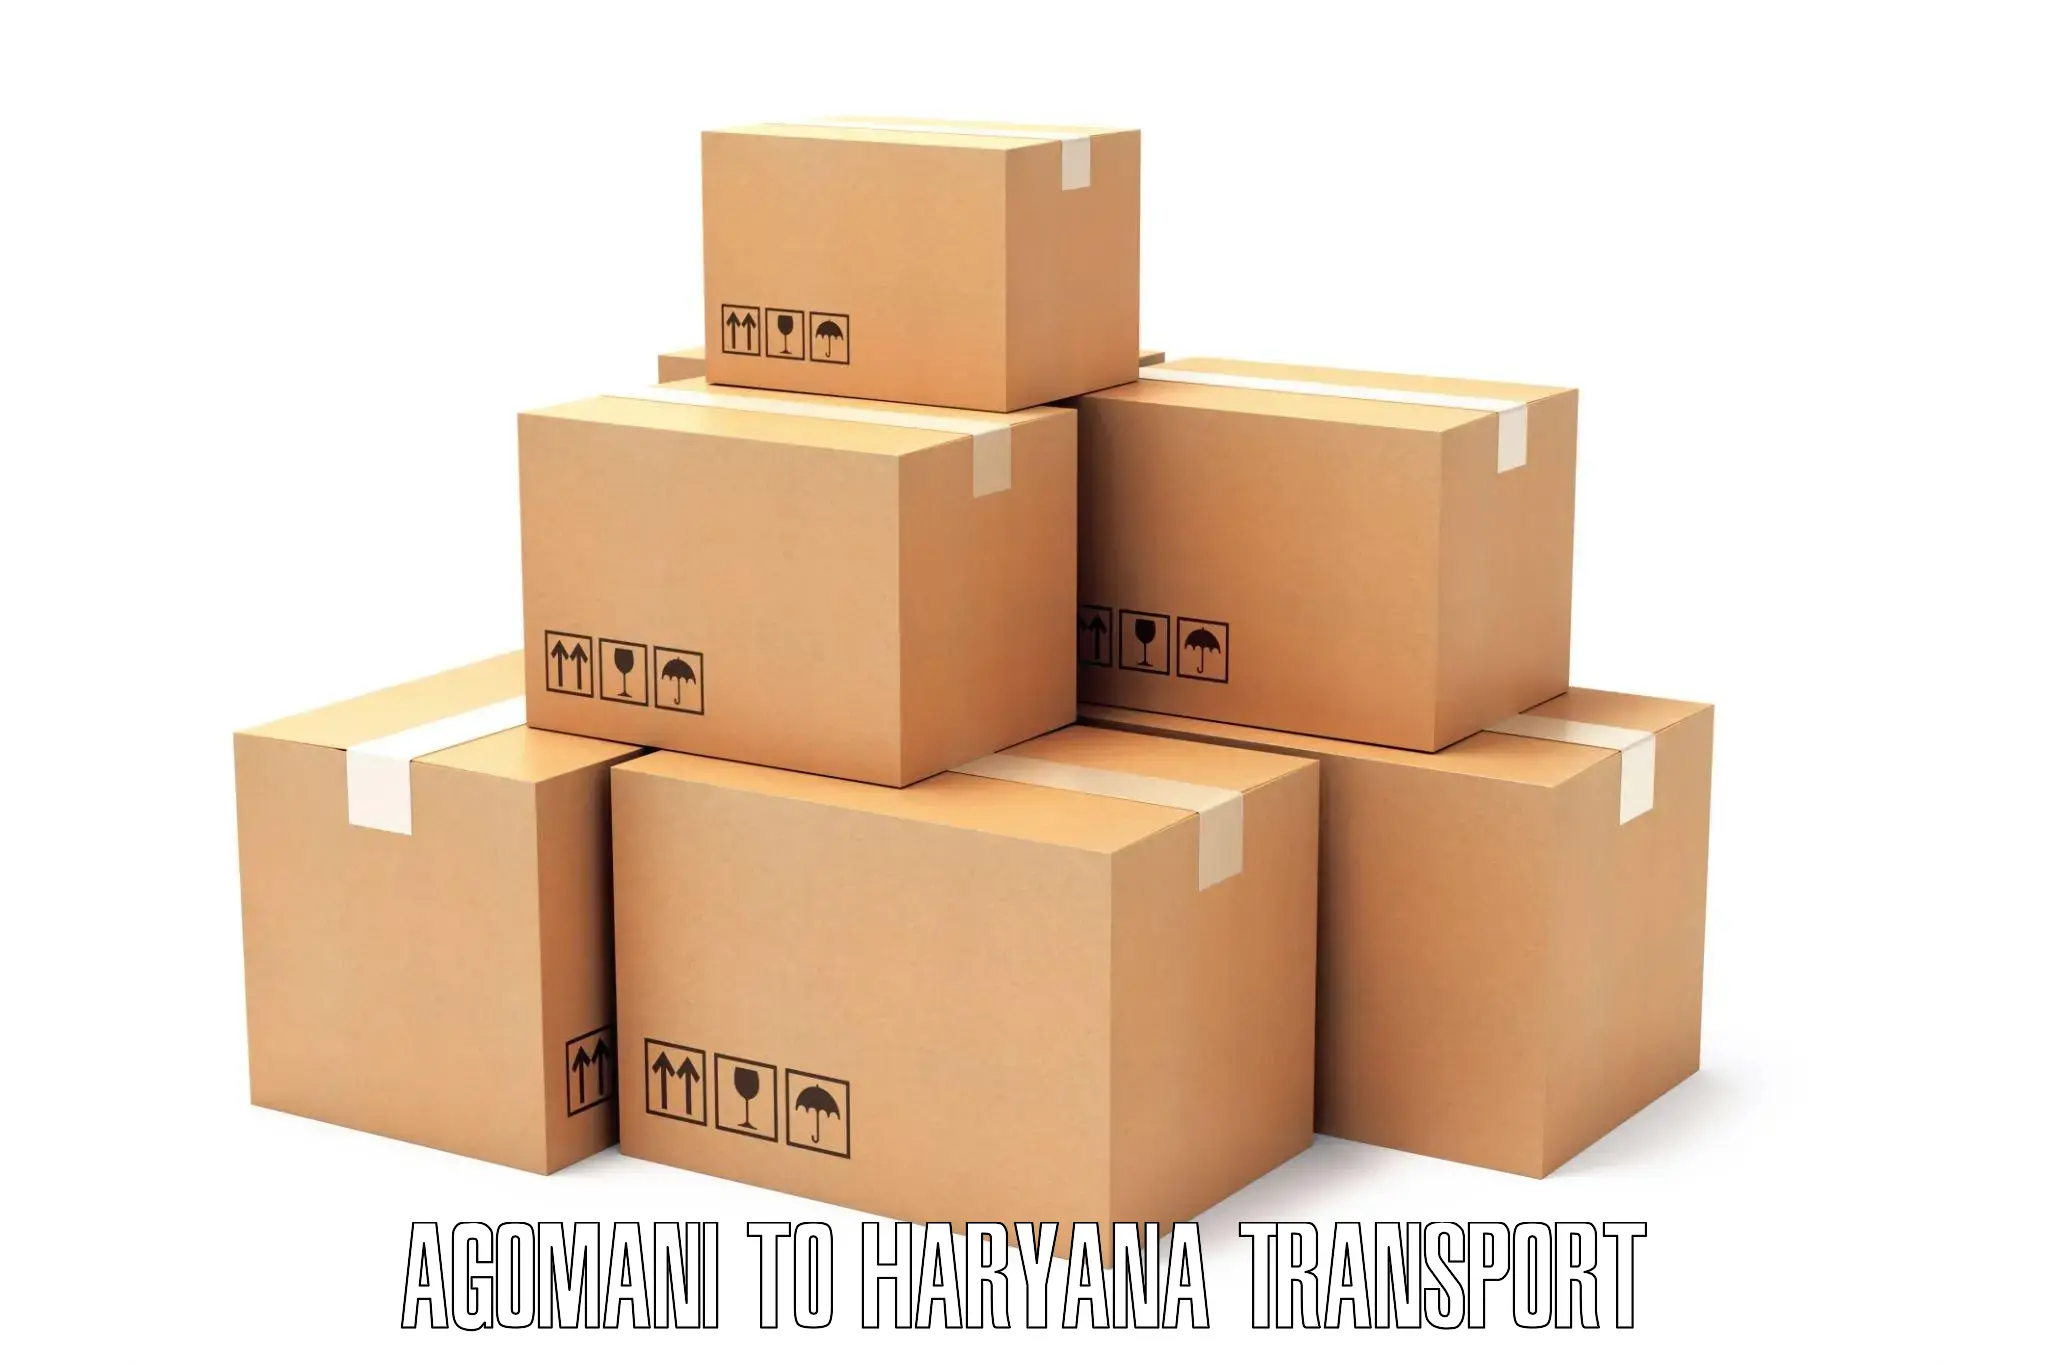 Delivery service in Agomani to Gurugram